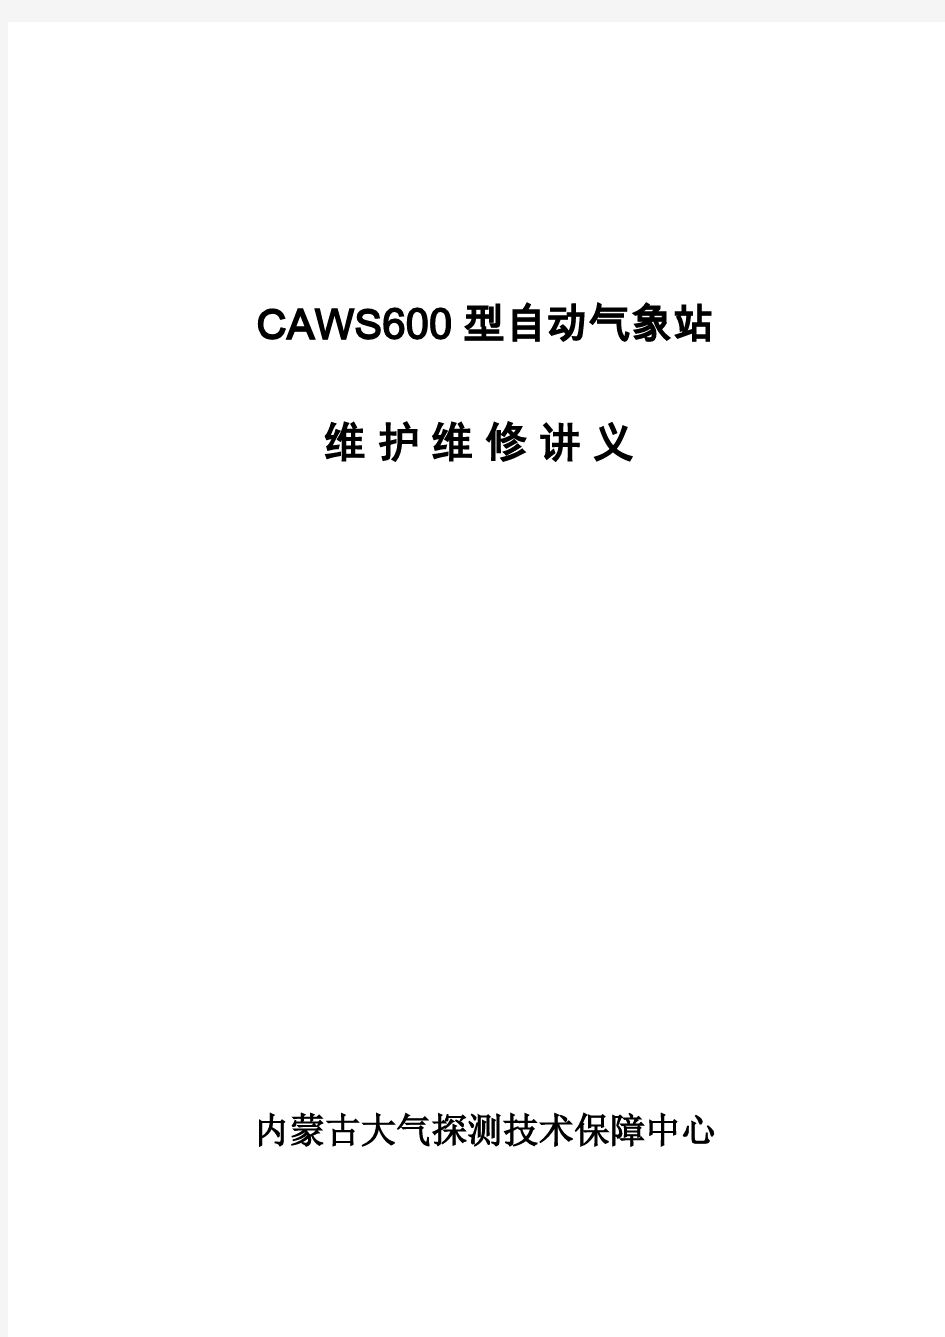 CAWS600型自动气象站维护维修手册(内蒙古大气探测技术保障中心)